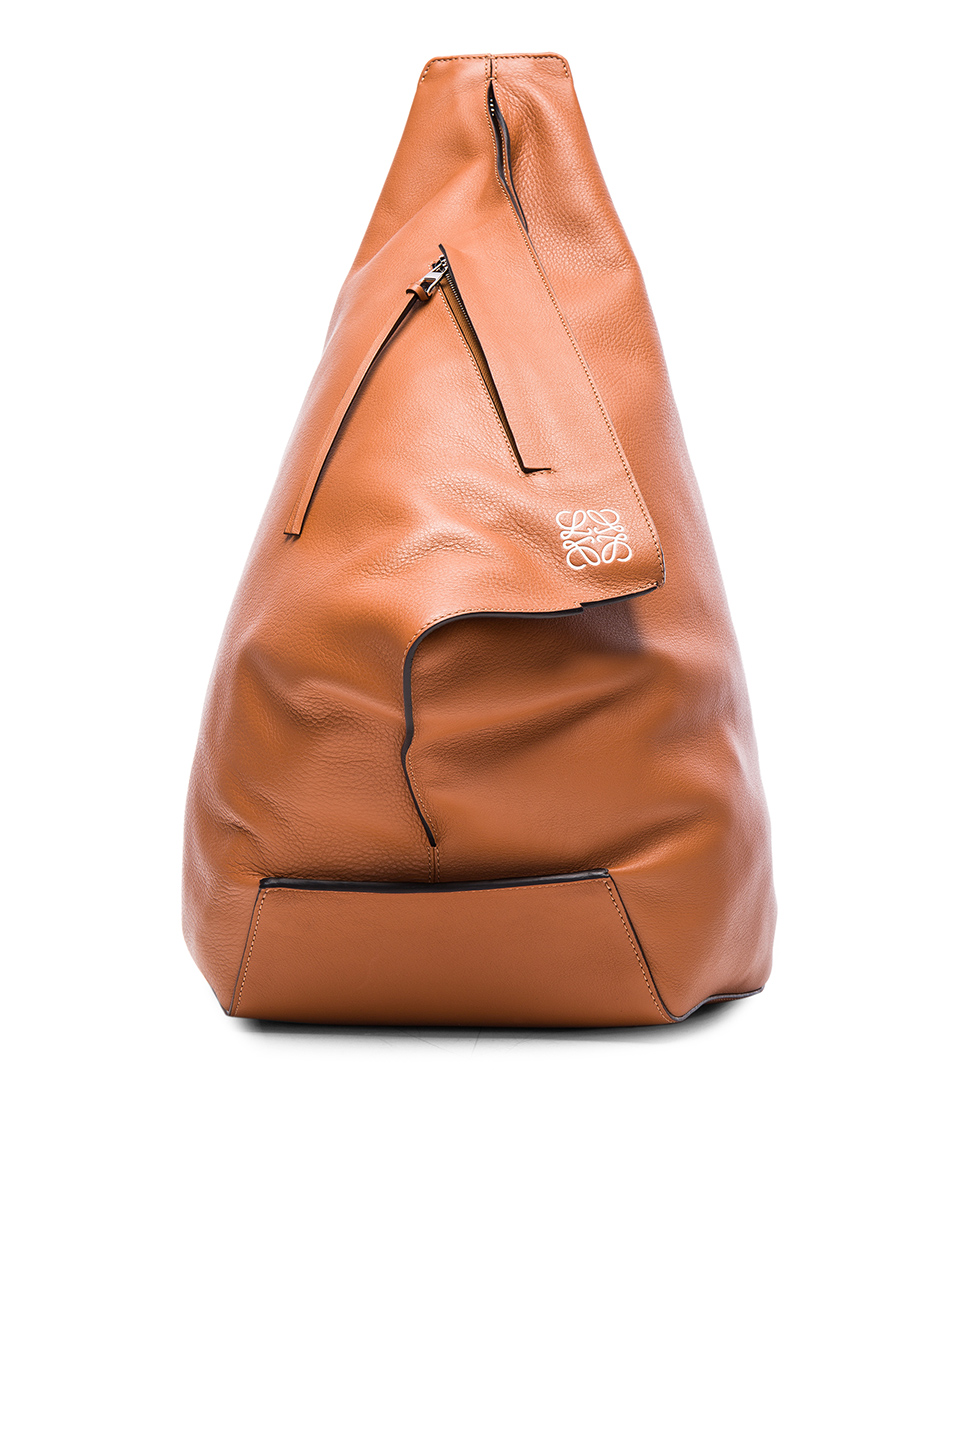 Loewe Anton Leather Backpack In Tan | ModeSens